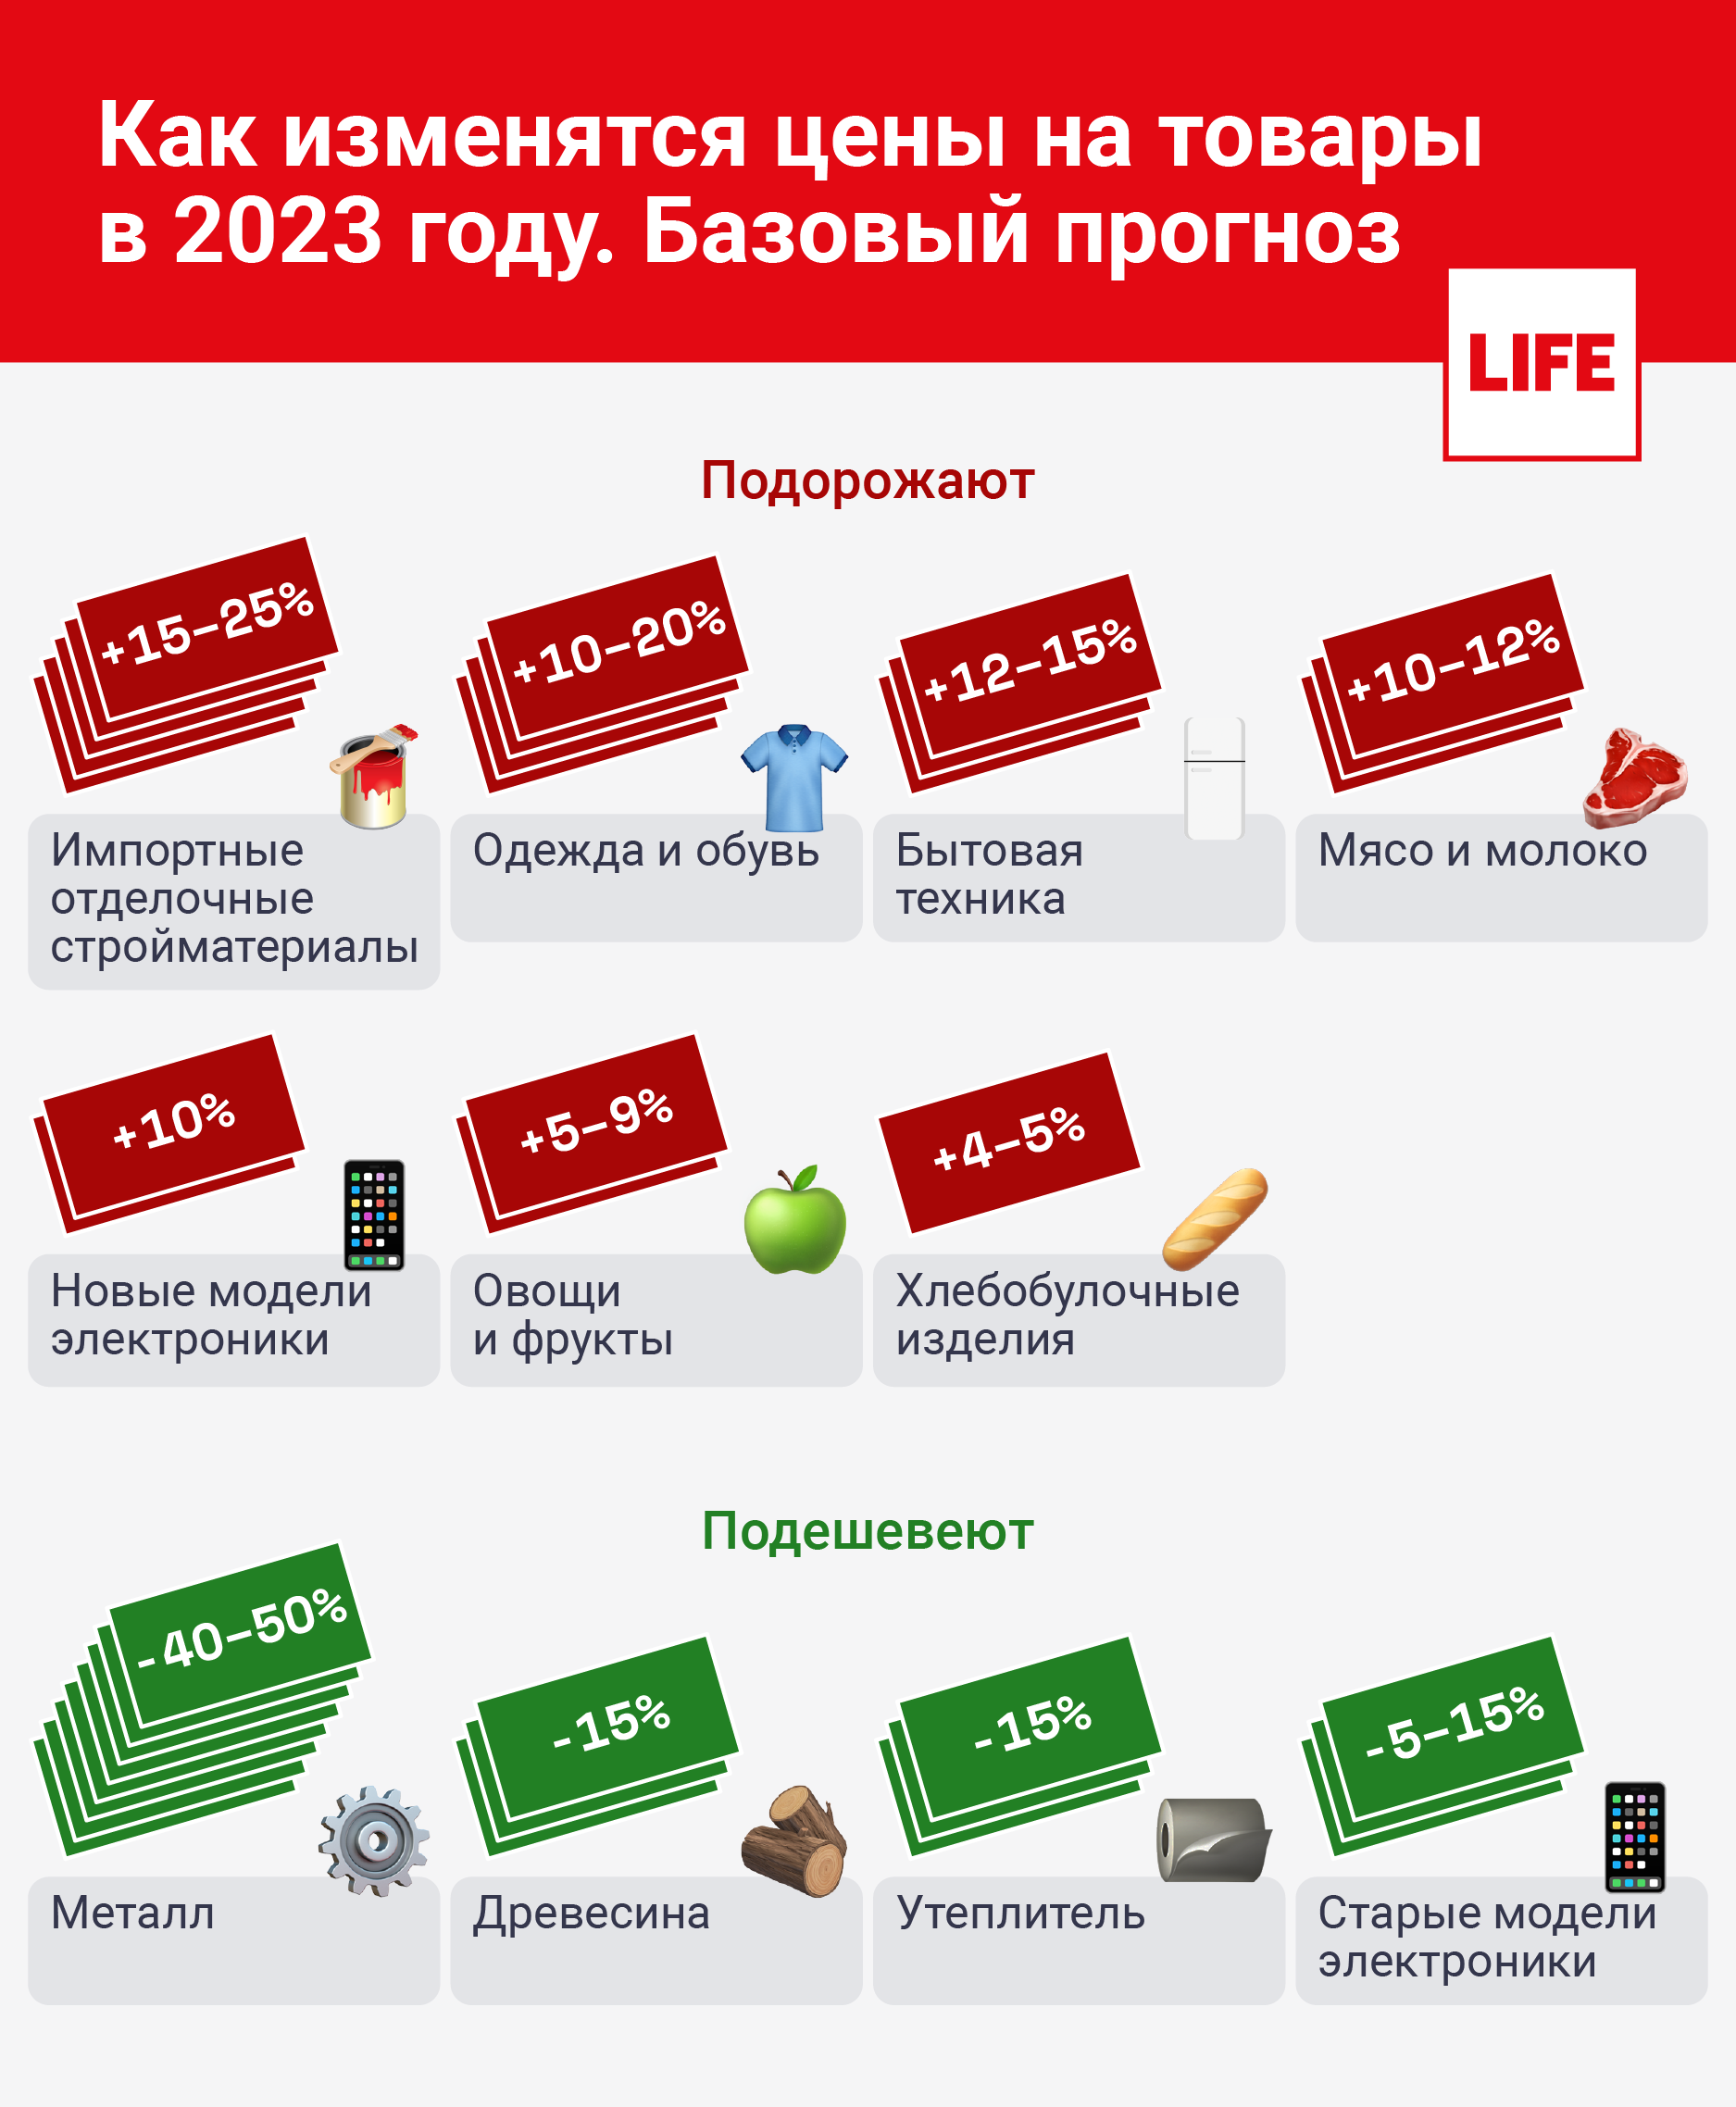 Как изменятся цены на товары в 2023 году? Базовый прогноз. Инфографика © LIFE